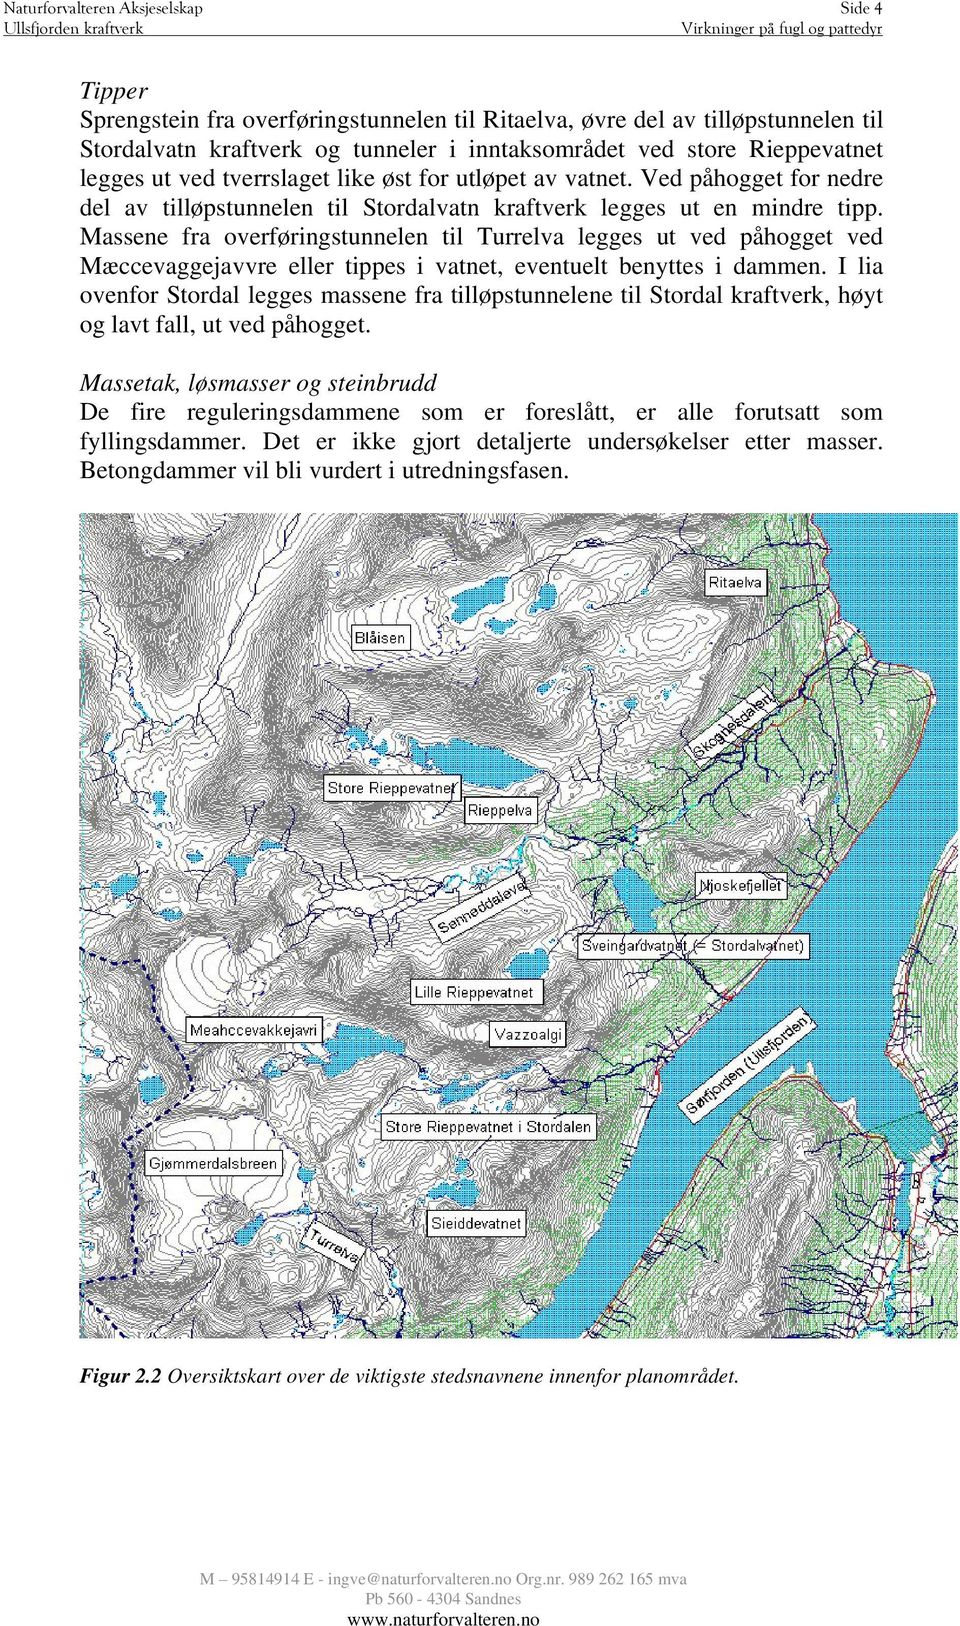 Massene fra overføringstunnelen til Turrelva legges ut ved påhogget ved Mæccevaggejavvre eller tippes i vatnet, eventuelt benyttes i dammen.